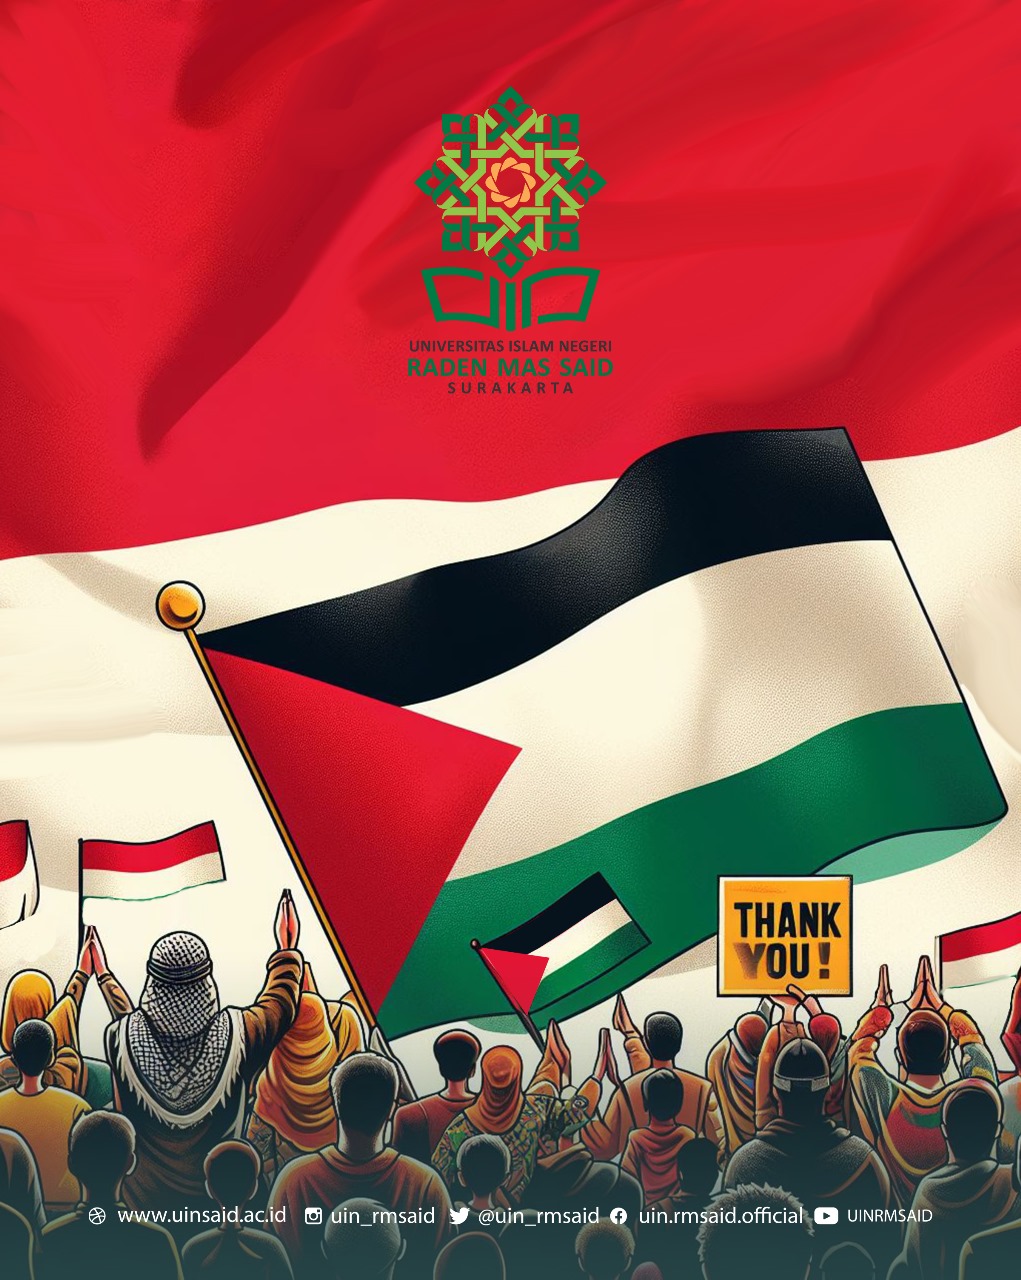 UIN RM Said Tutup Donasi Terbuka Untuk Palestina